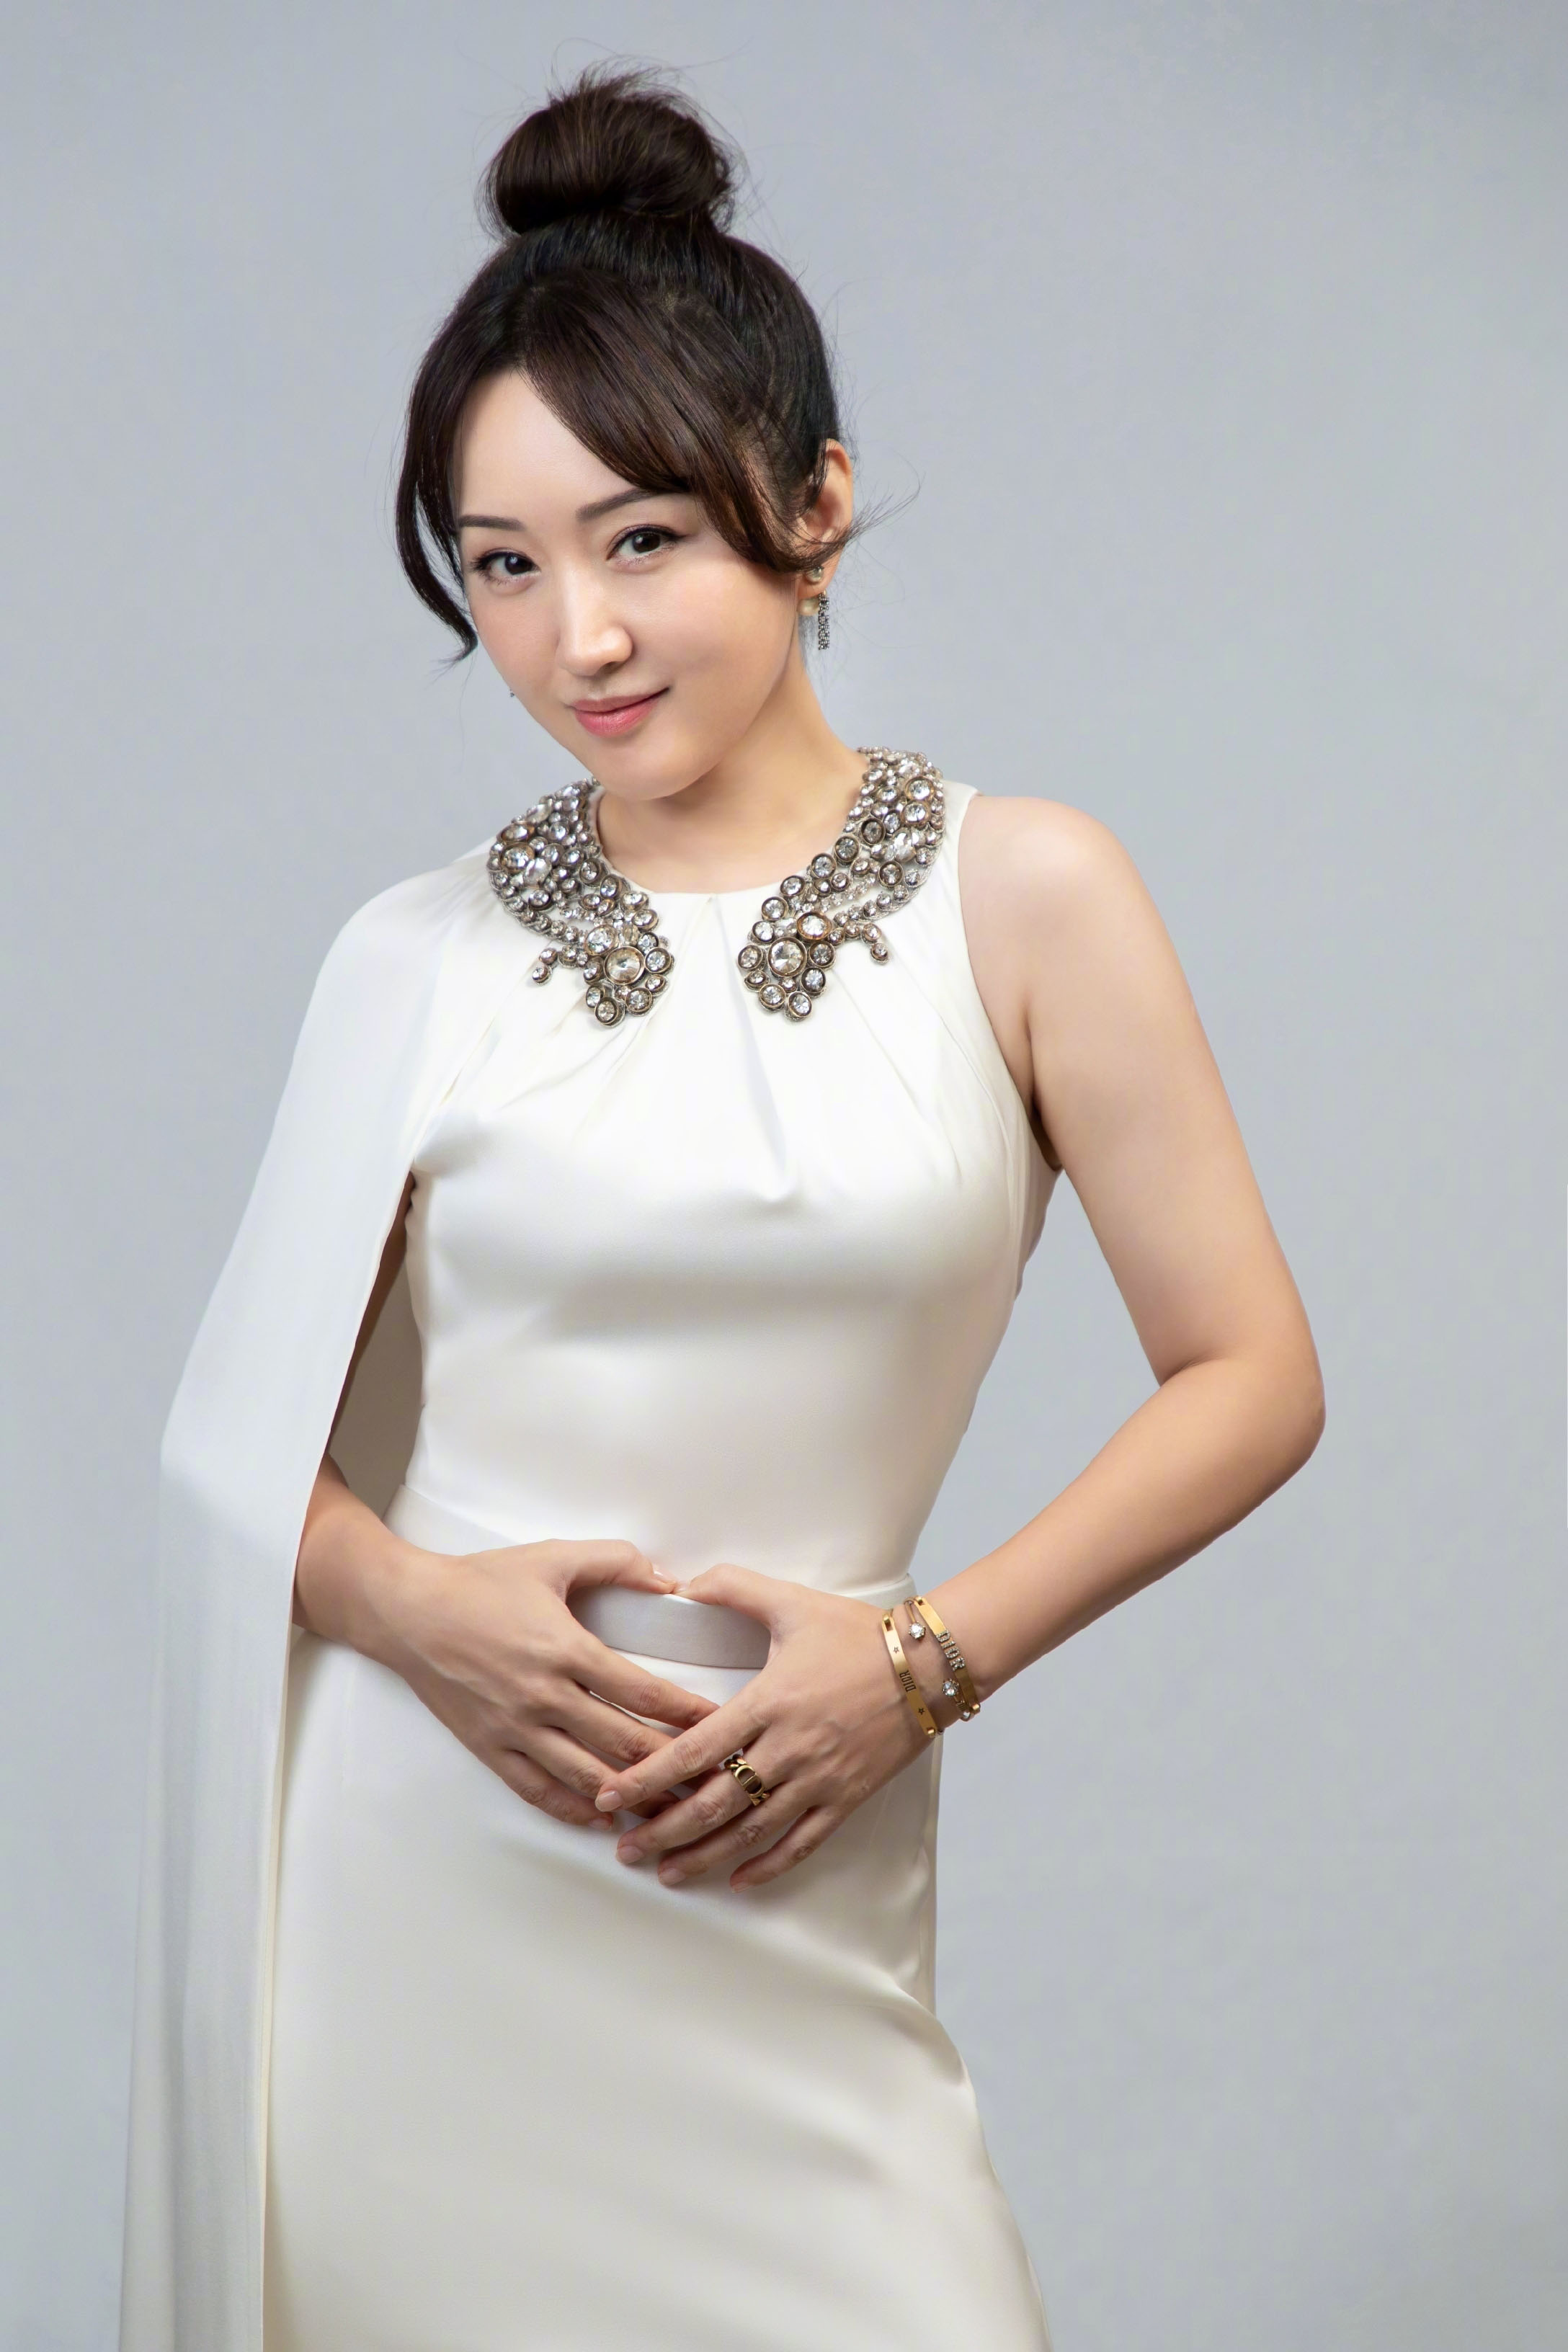 18日深夜,知名歌手,甜歌皇后杨钰莹在演出结束后晒出了几张美照,获得